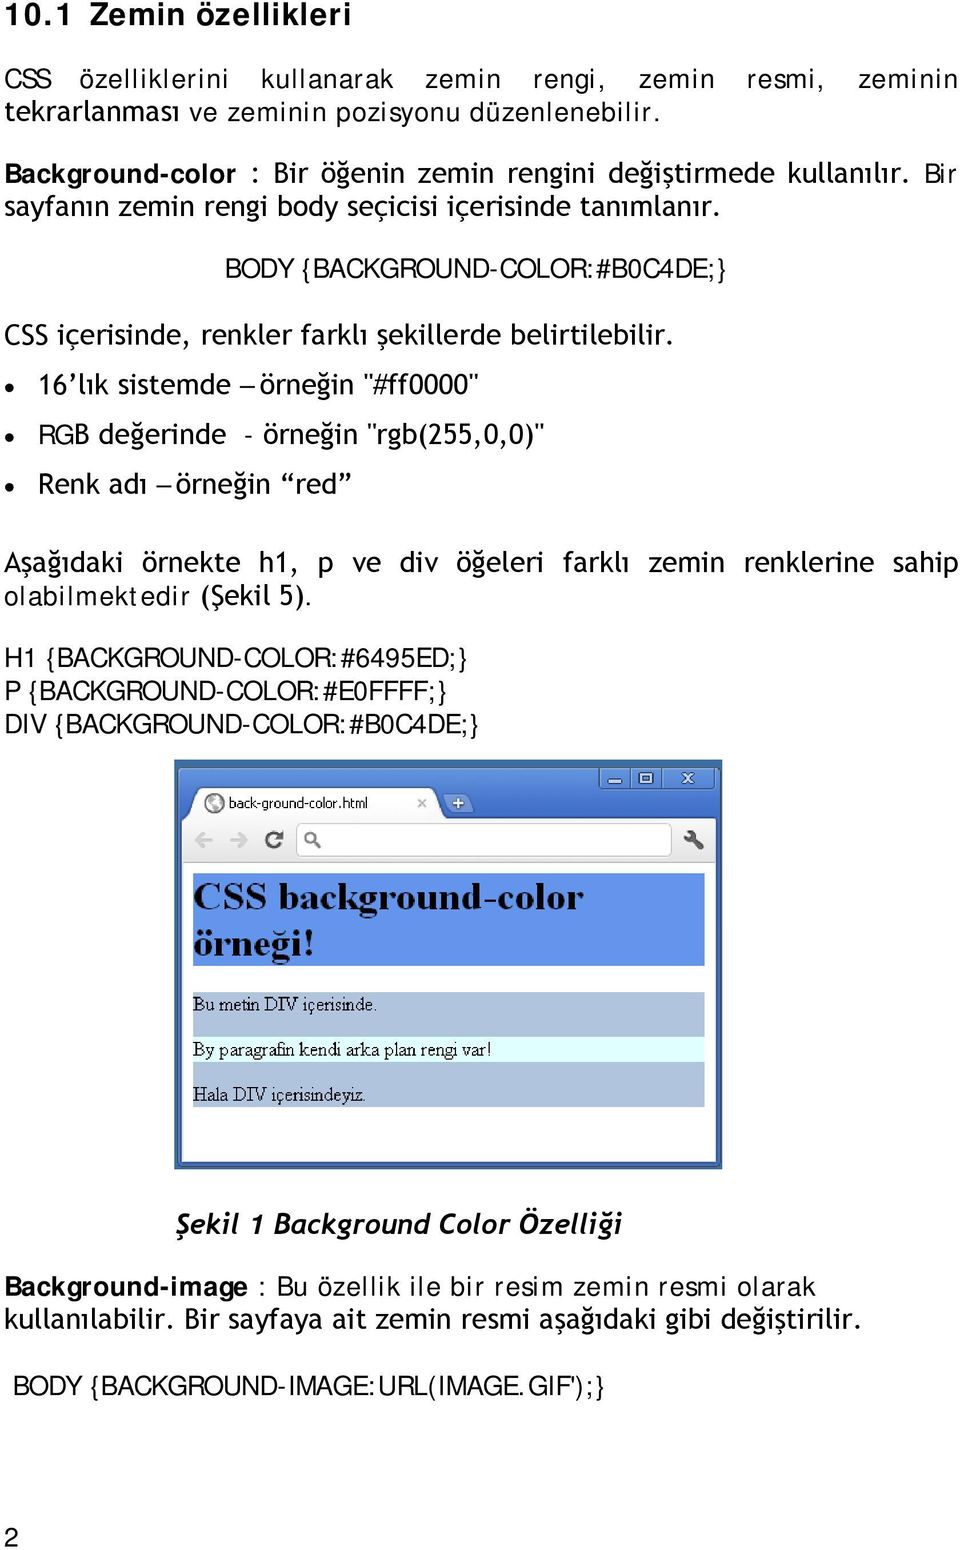 BODY BACKGROUND-COLOR:#B0C4DE; CSS içerisinde, renkler farklı şekillerde belirtilebilir.